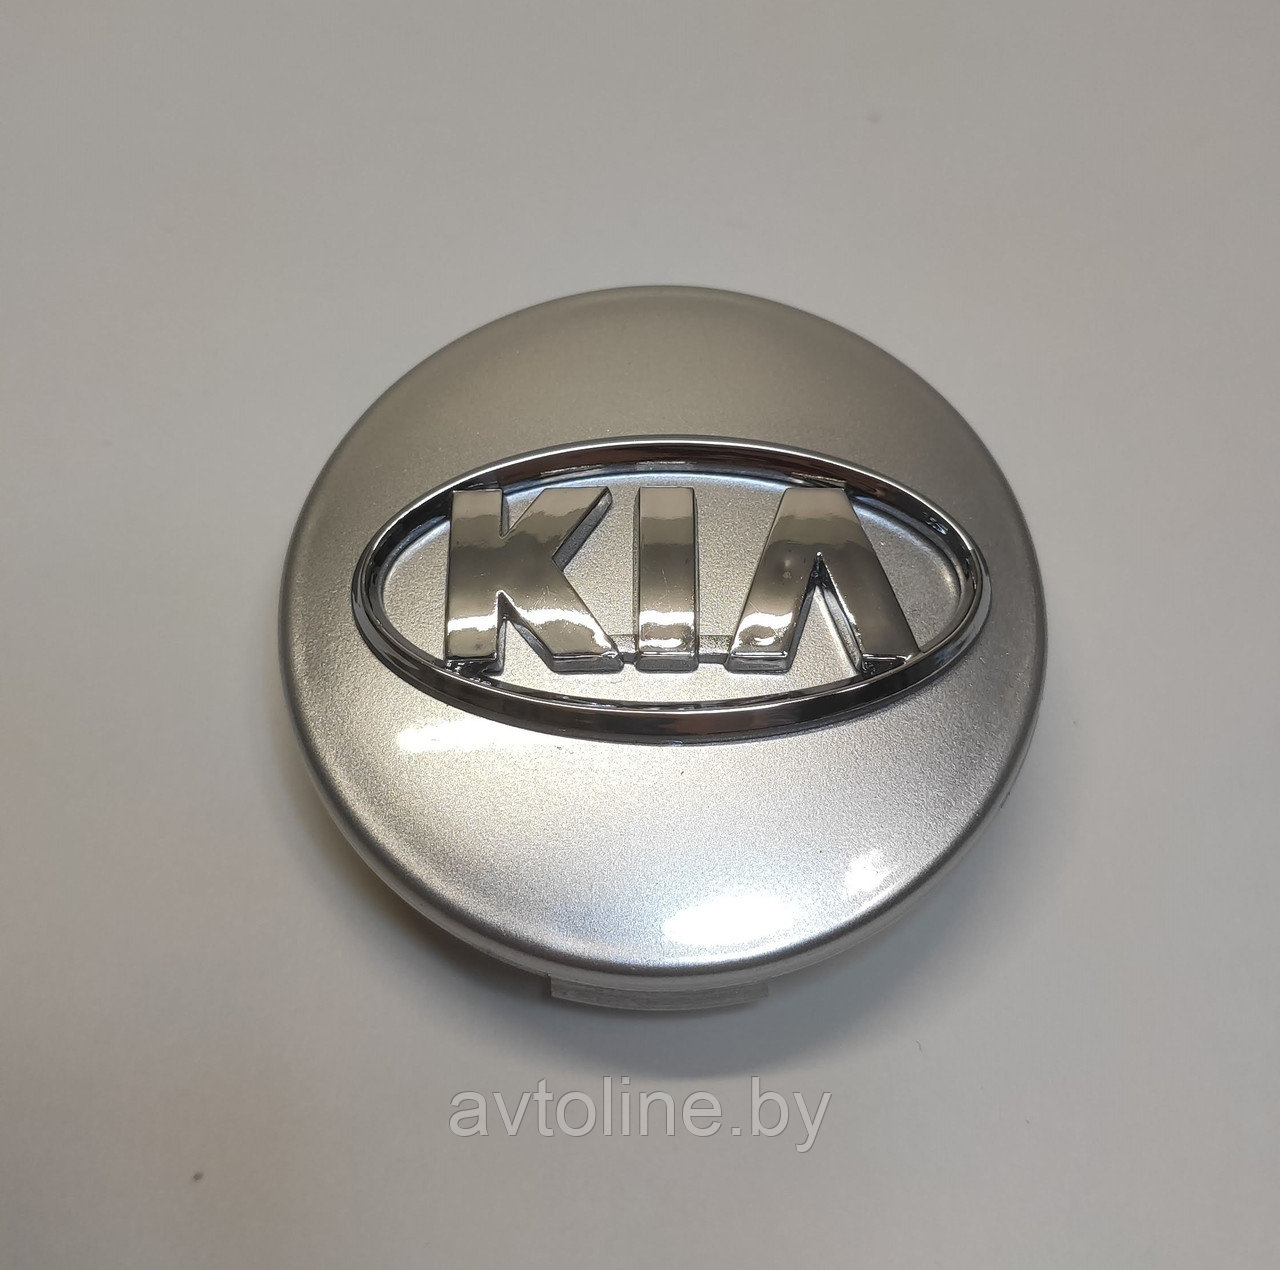 Заглушка литого диска KIA 61/57мм серая хром KIA-002, фото 1